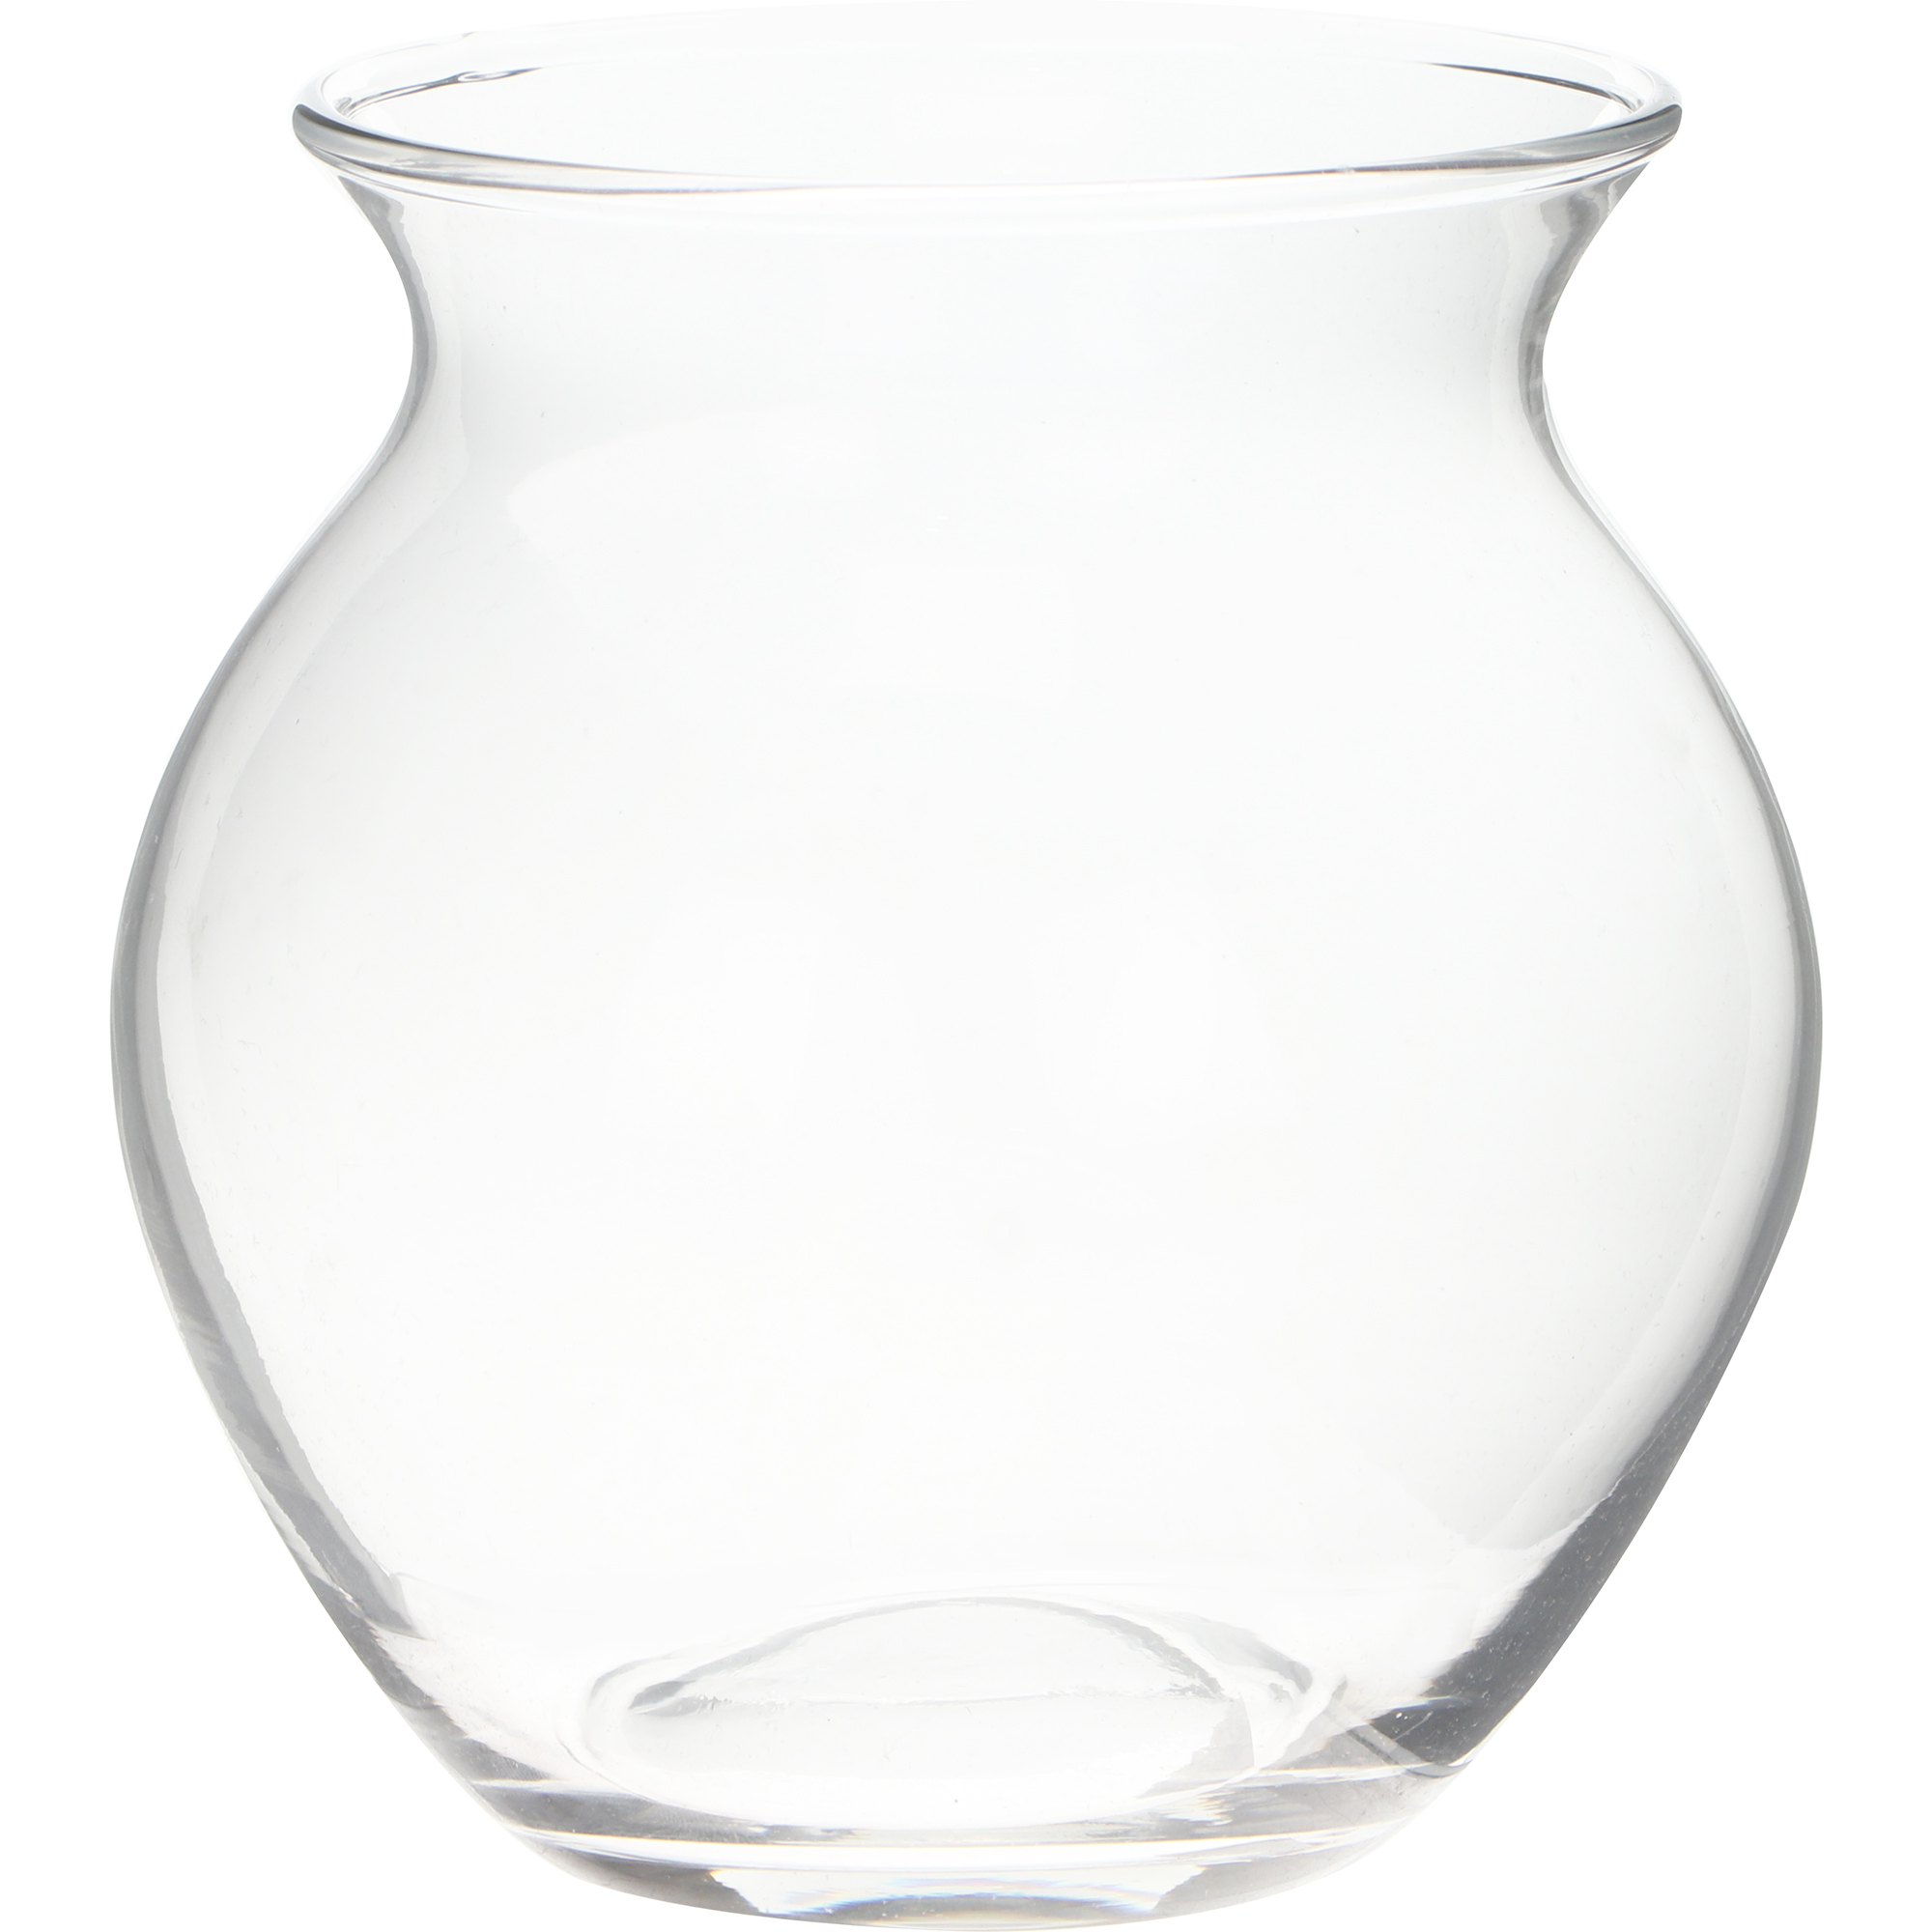 Ваза Hakbijl glass Kamara, 13х12.5 см